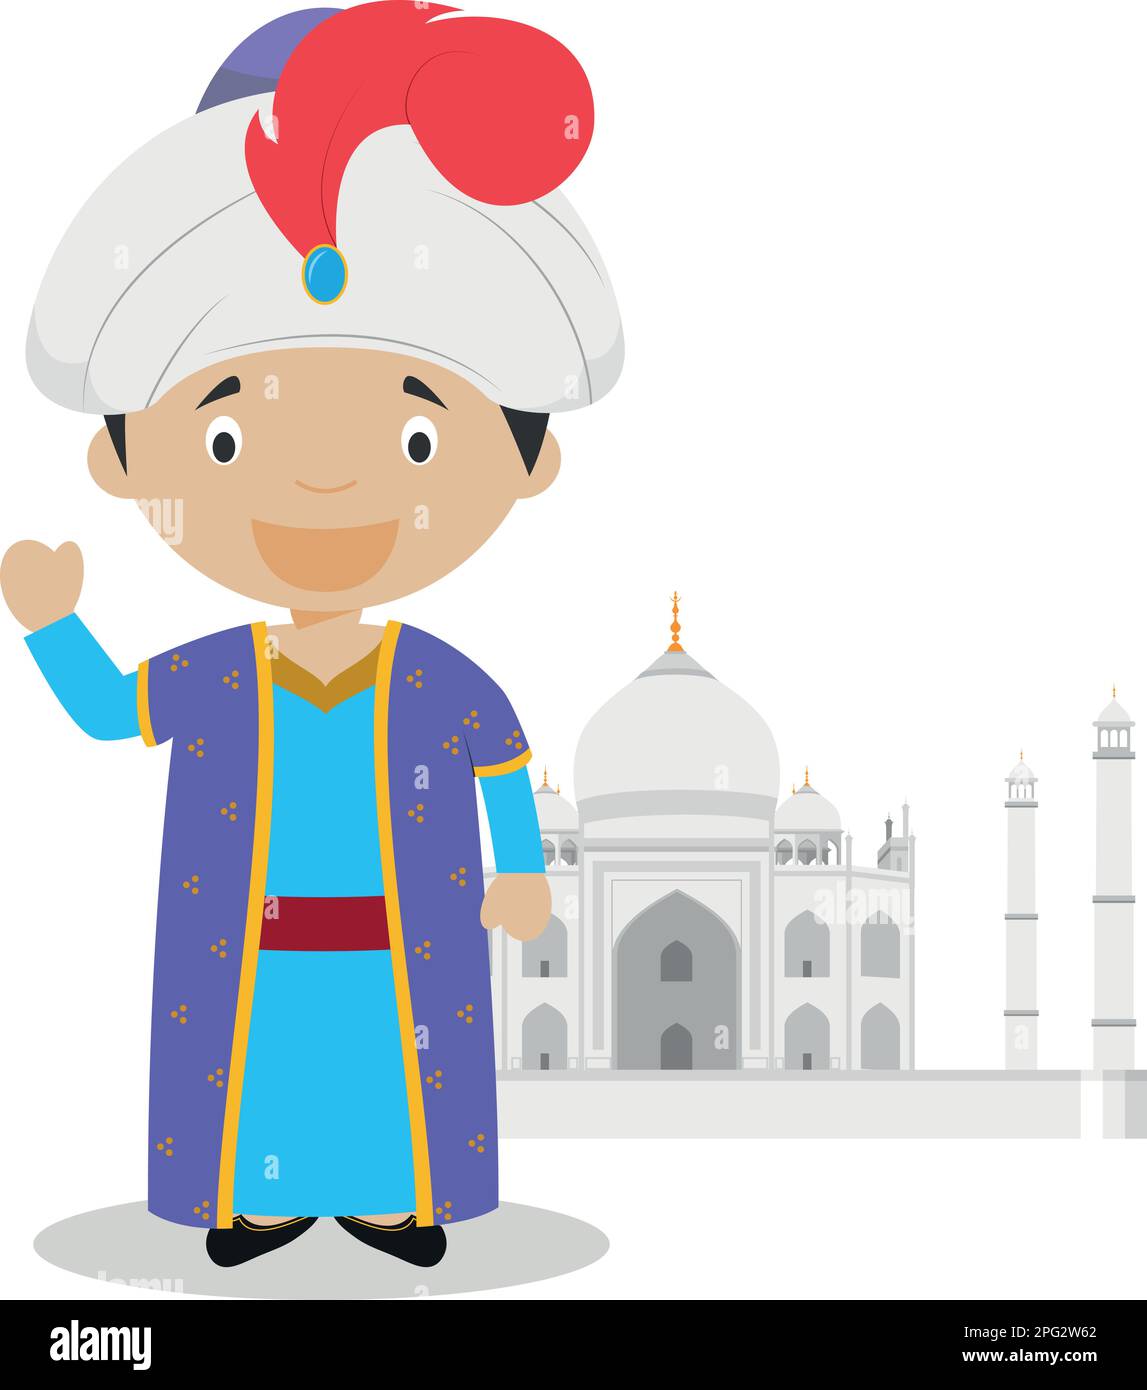 Personnage de dessin animé de Mughal avec l'illustration de Taj Mahal. Illustration vectorielle. Collection d'histoire pour enfants. Illustration de Vecteur